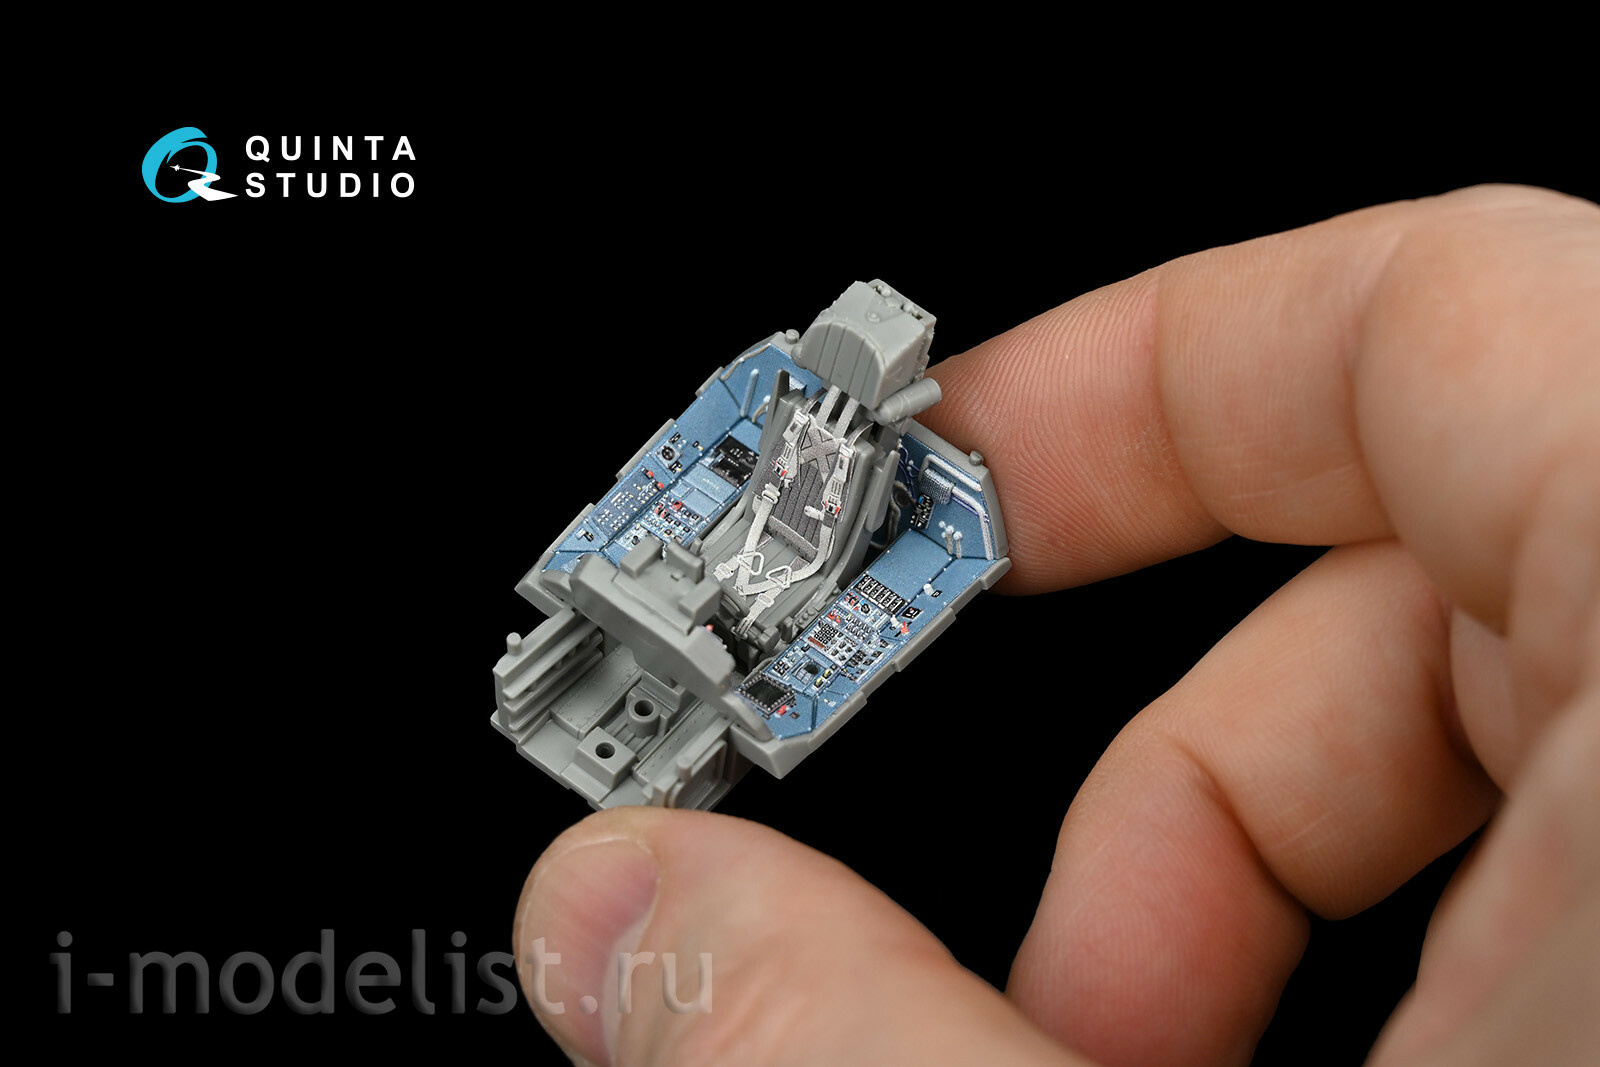 QD48057 Quinta Studio 1/48 3D Декаль интерьера кабины Суххой-35C (для модели GWH)